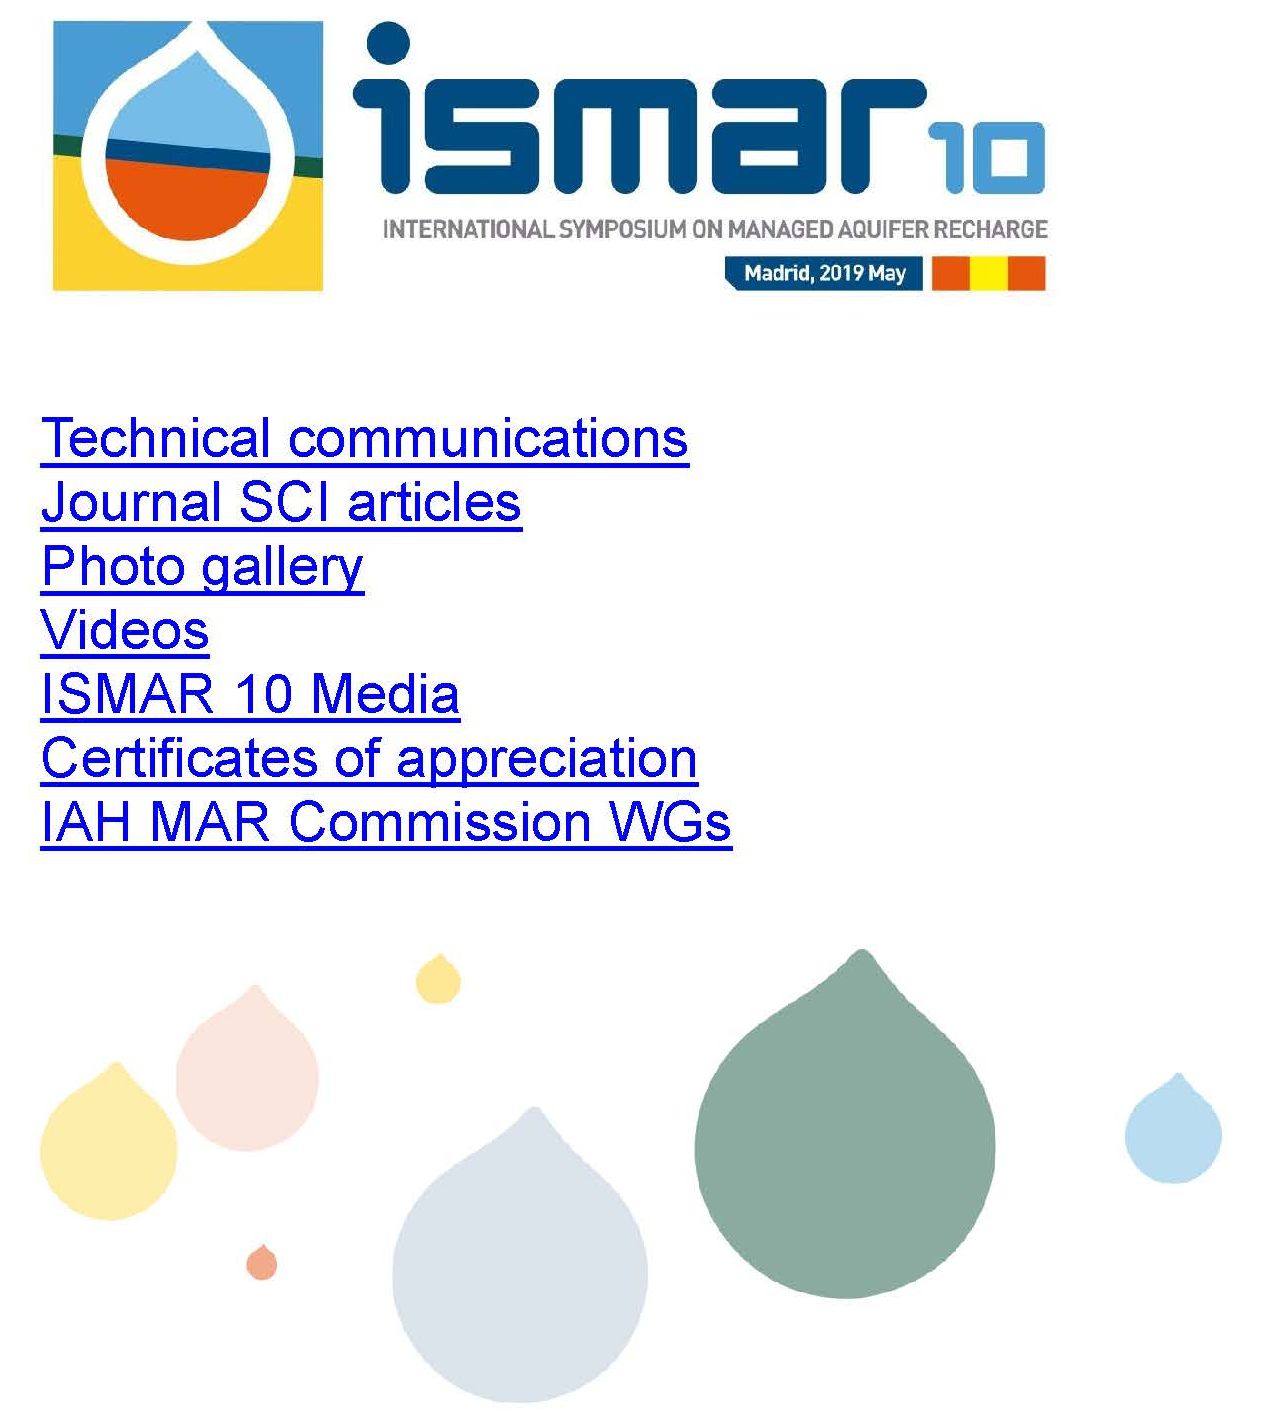 Tras la clausura de la Web ISMAR10.net, los principales resultados se han trasladado a dinamar.tragsa.es